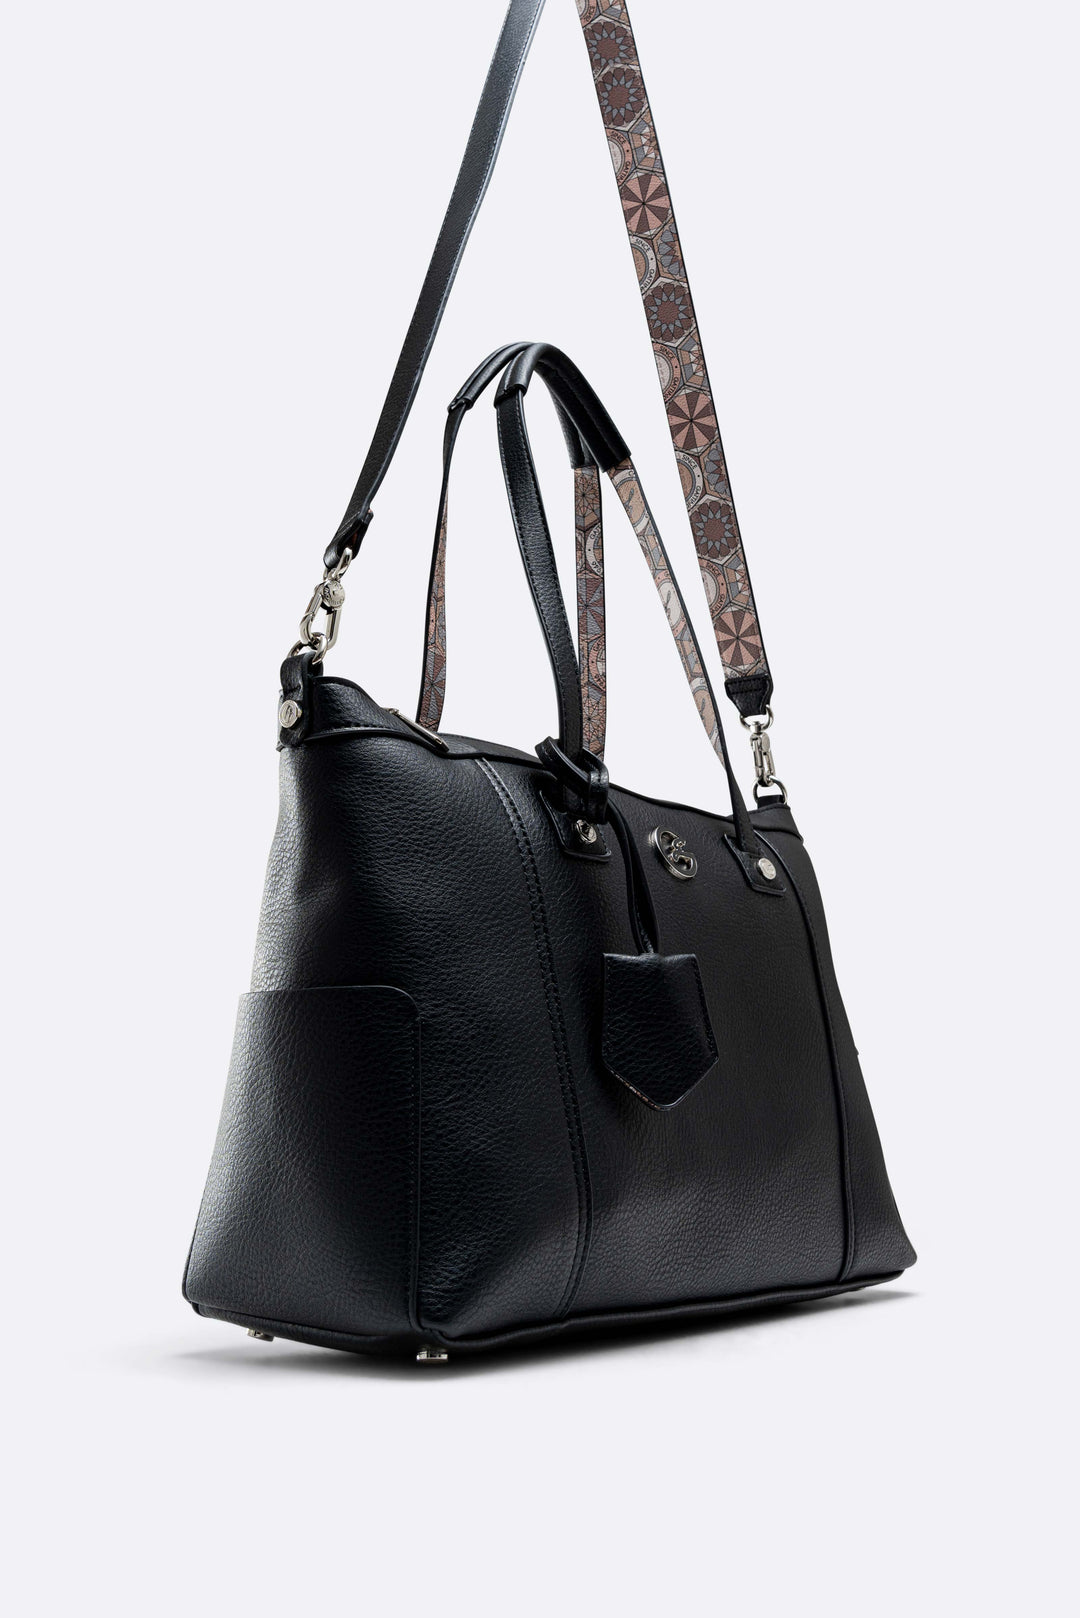 Shopping bag Denise Soft black